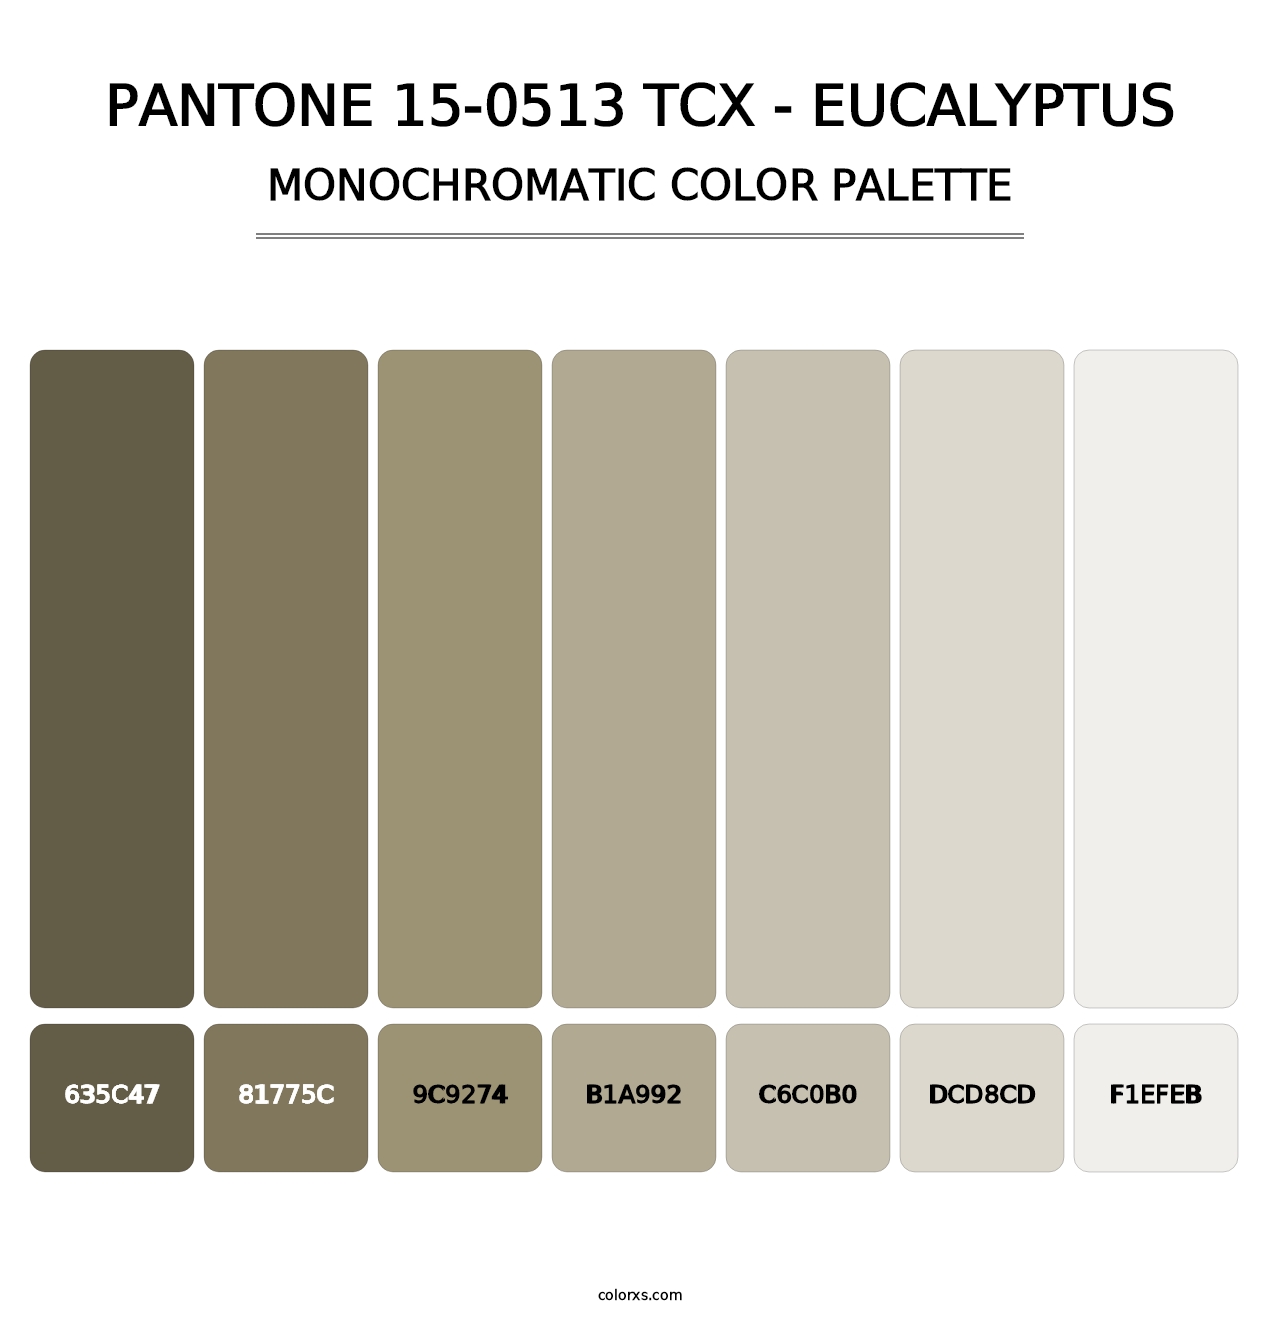 PANTONE 15-0513 TCX - Eucalyptus - Monochromatic Color Palette